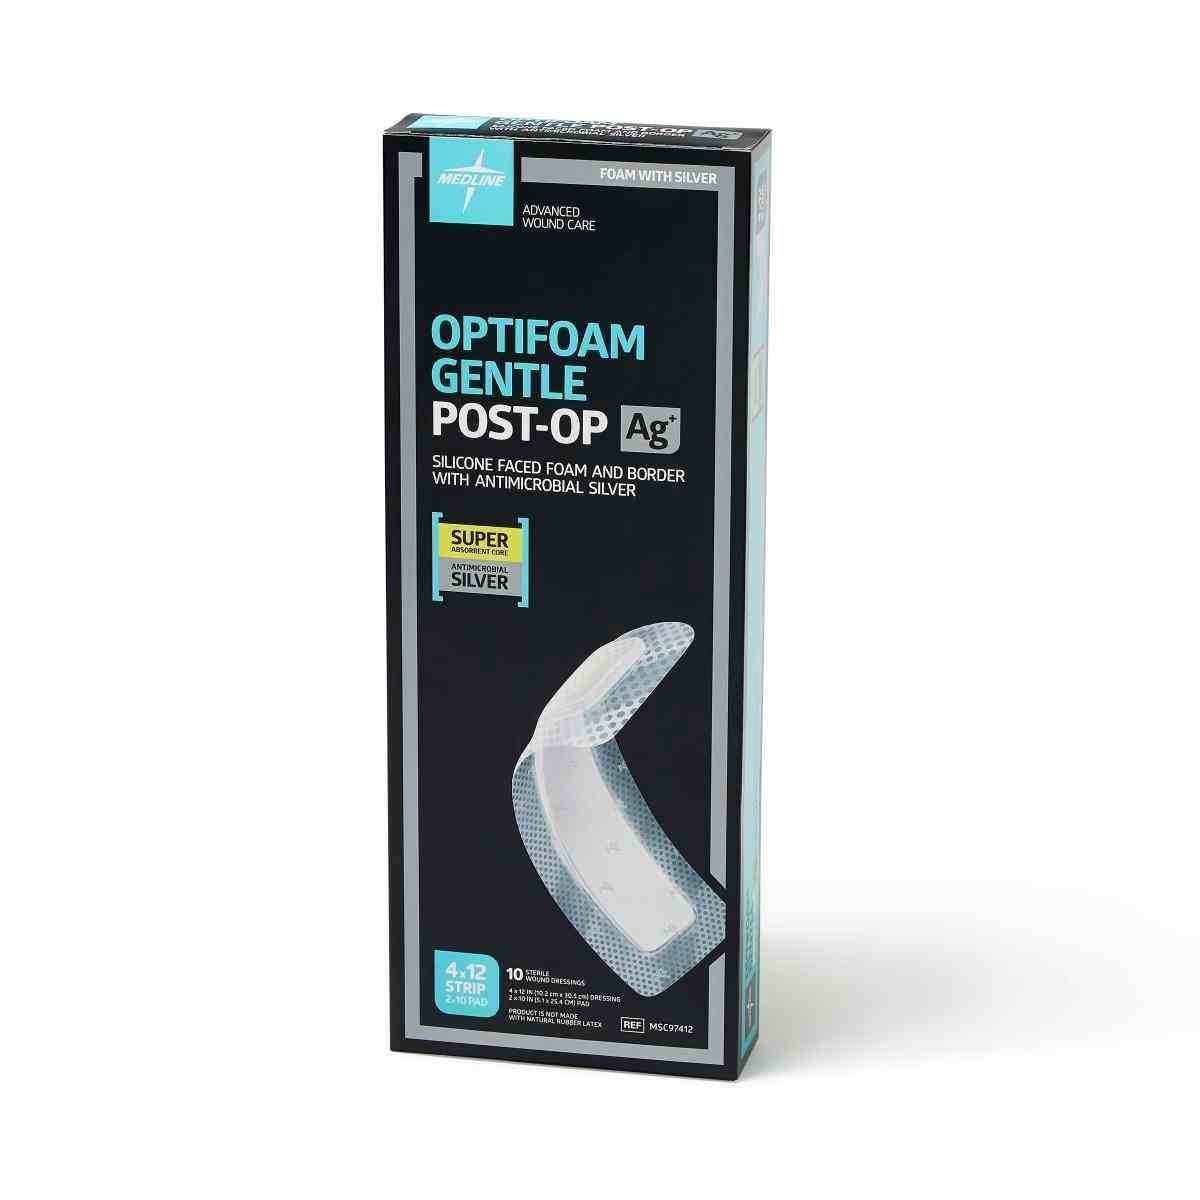 Optifoam Gentle AG+ Post-Op Foam Dressing, MSC97412Z, 4" X 12" - Box of 10